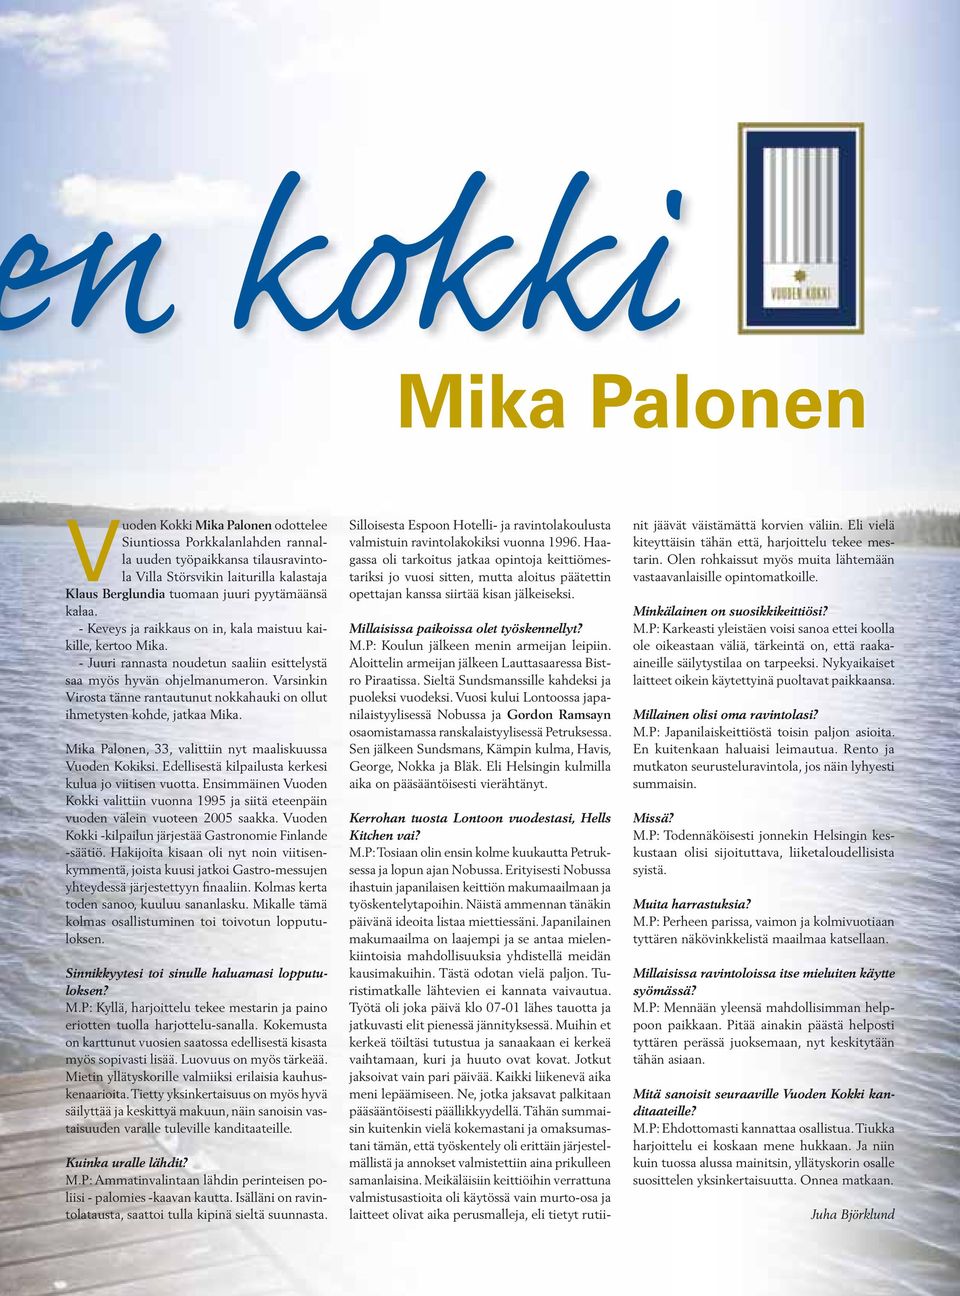 Varsinkin Virosta tänne rantautunut nokkahauki on ollut ihmetysten kohde, jatkaa Mika. Mika Palonen, 33, valittiin nyt maaliskuussa Vuoden Kokiksi.